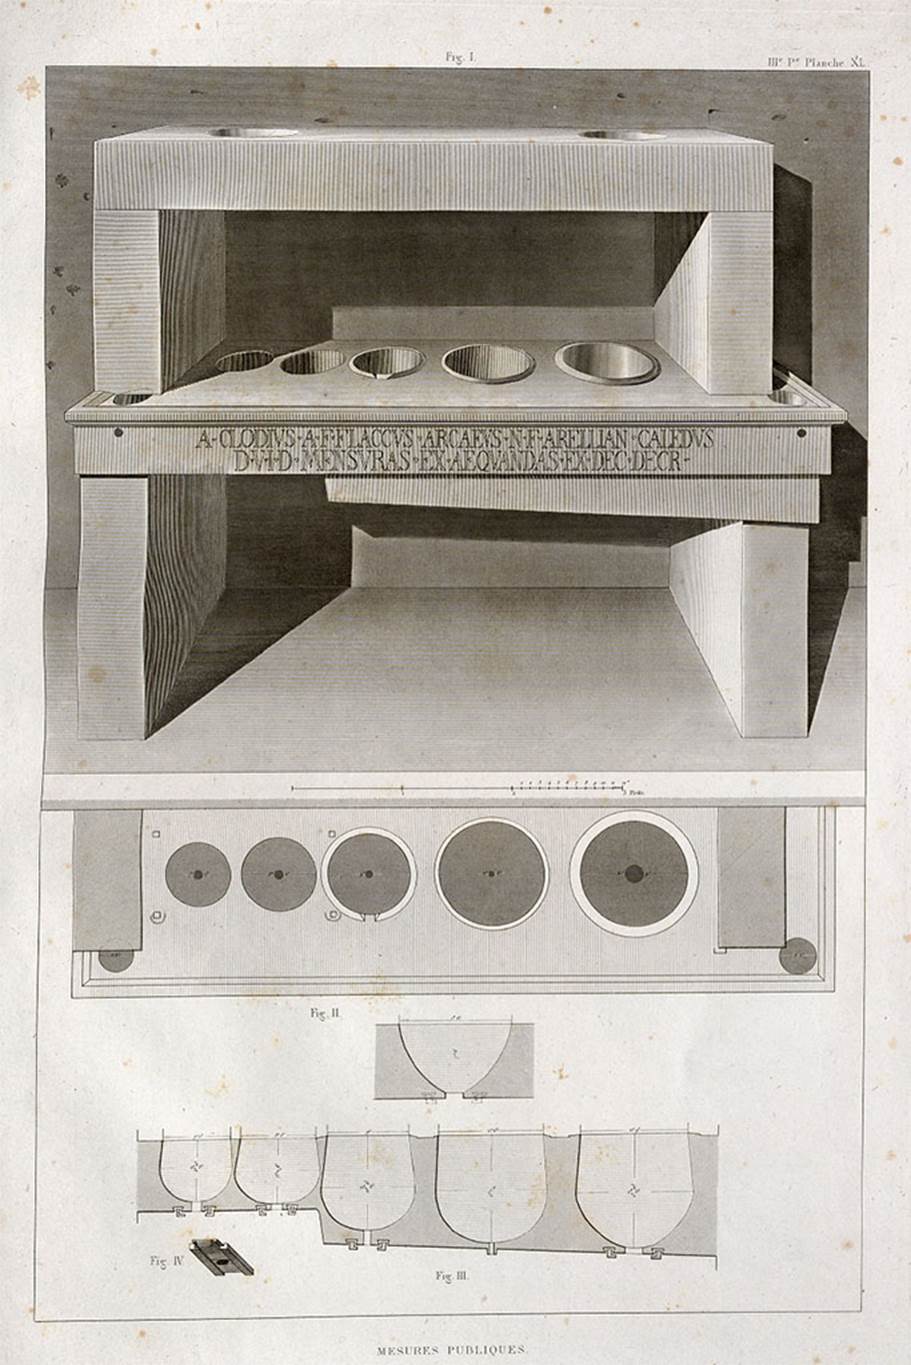 VII.7.31 Pompeii. 1829 drawing of mensa ponderaria.
See Mazois, F., 1829. Les Ruines de Pompei: Troisième Partie. Paris: Didot Frères, pl. XL. 
